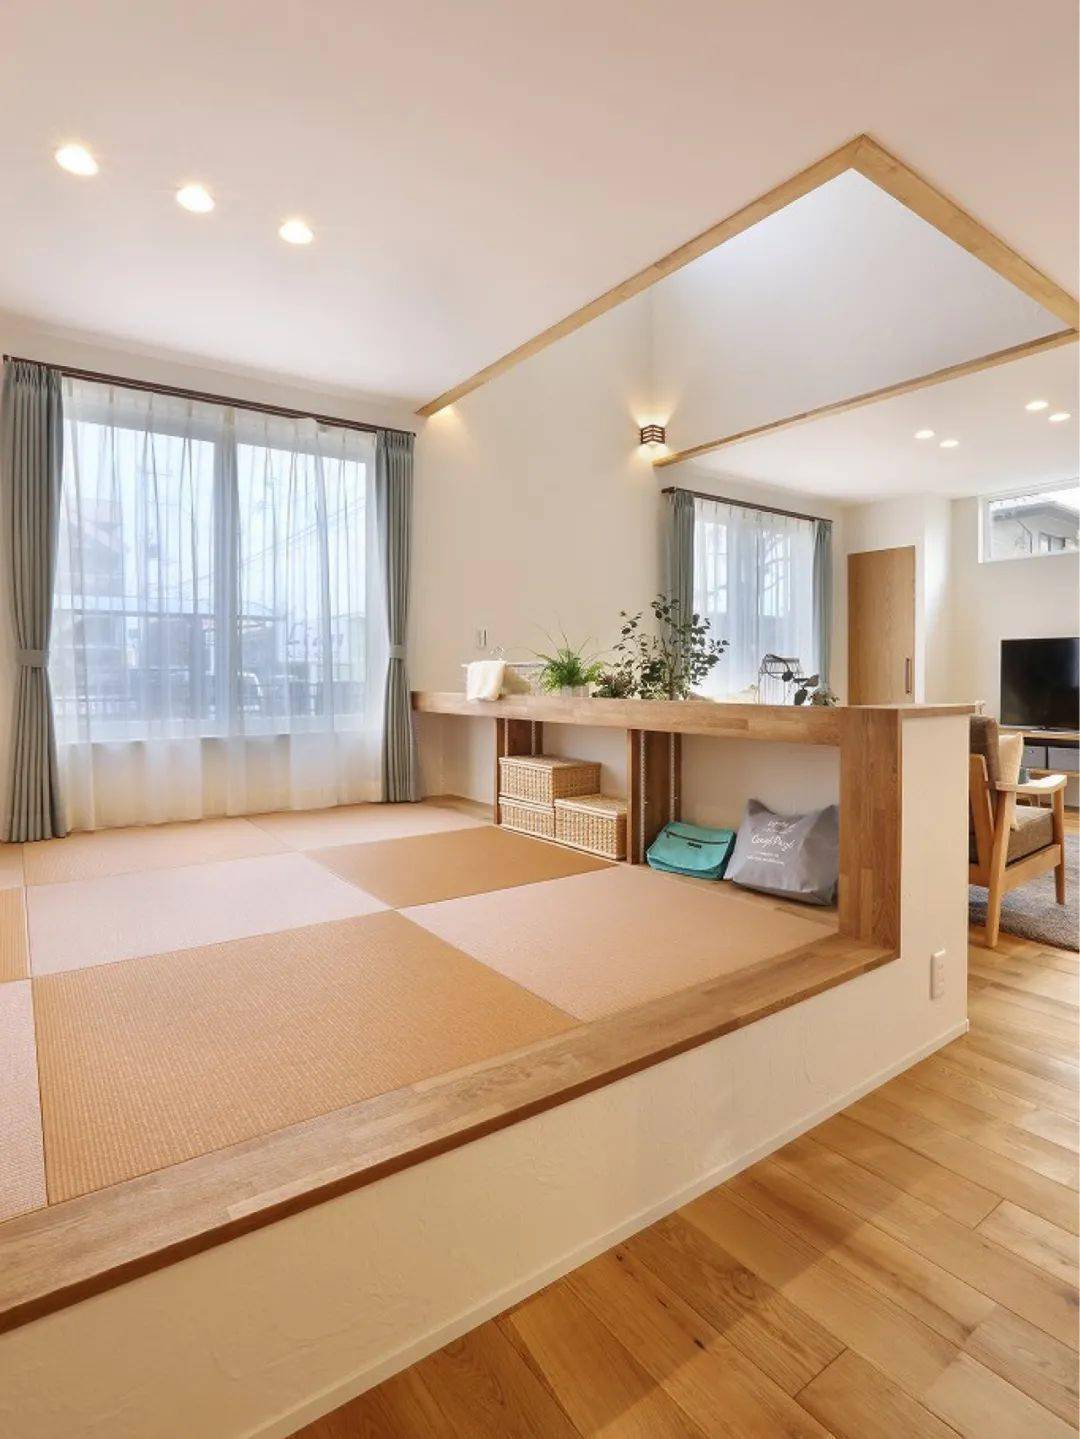 还有些日本家庭,会在客厅沙发的背后做一片榻榻米,做多功能的休息区